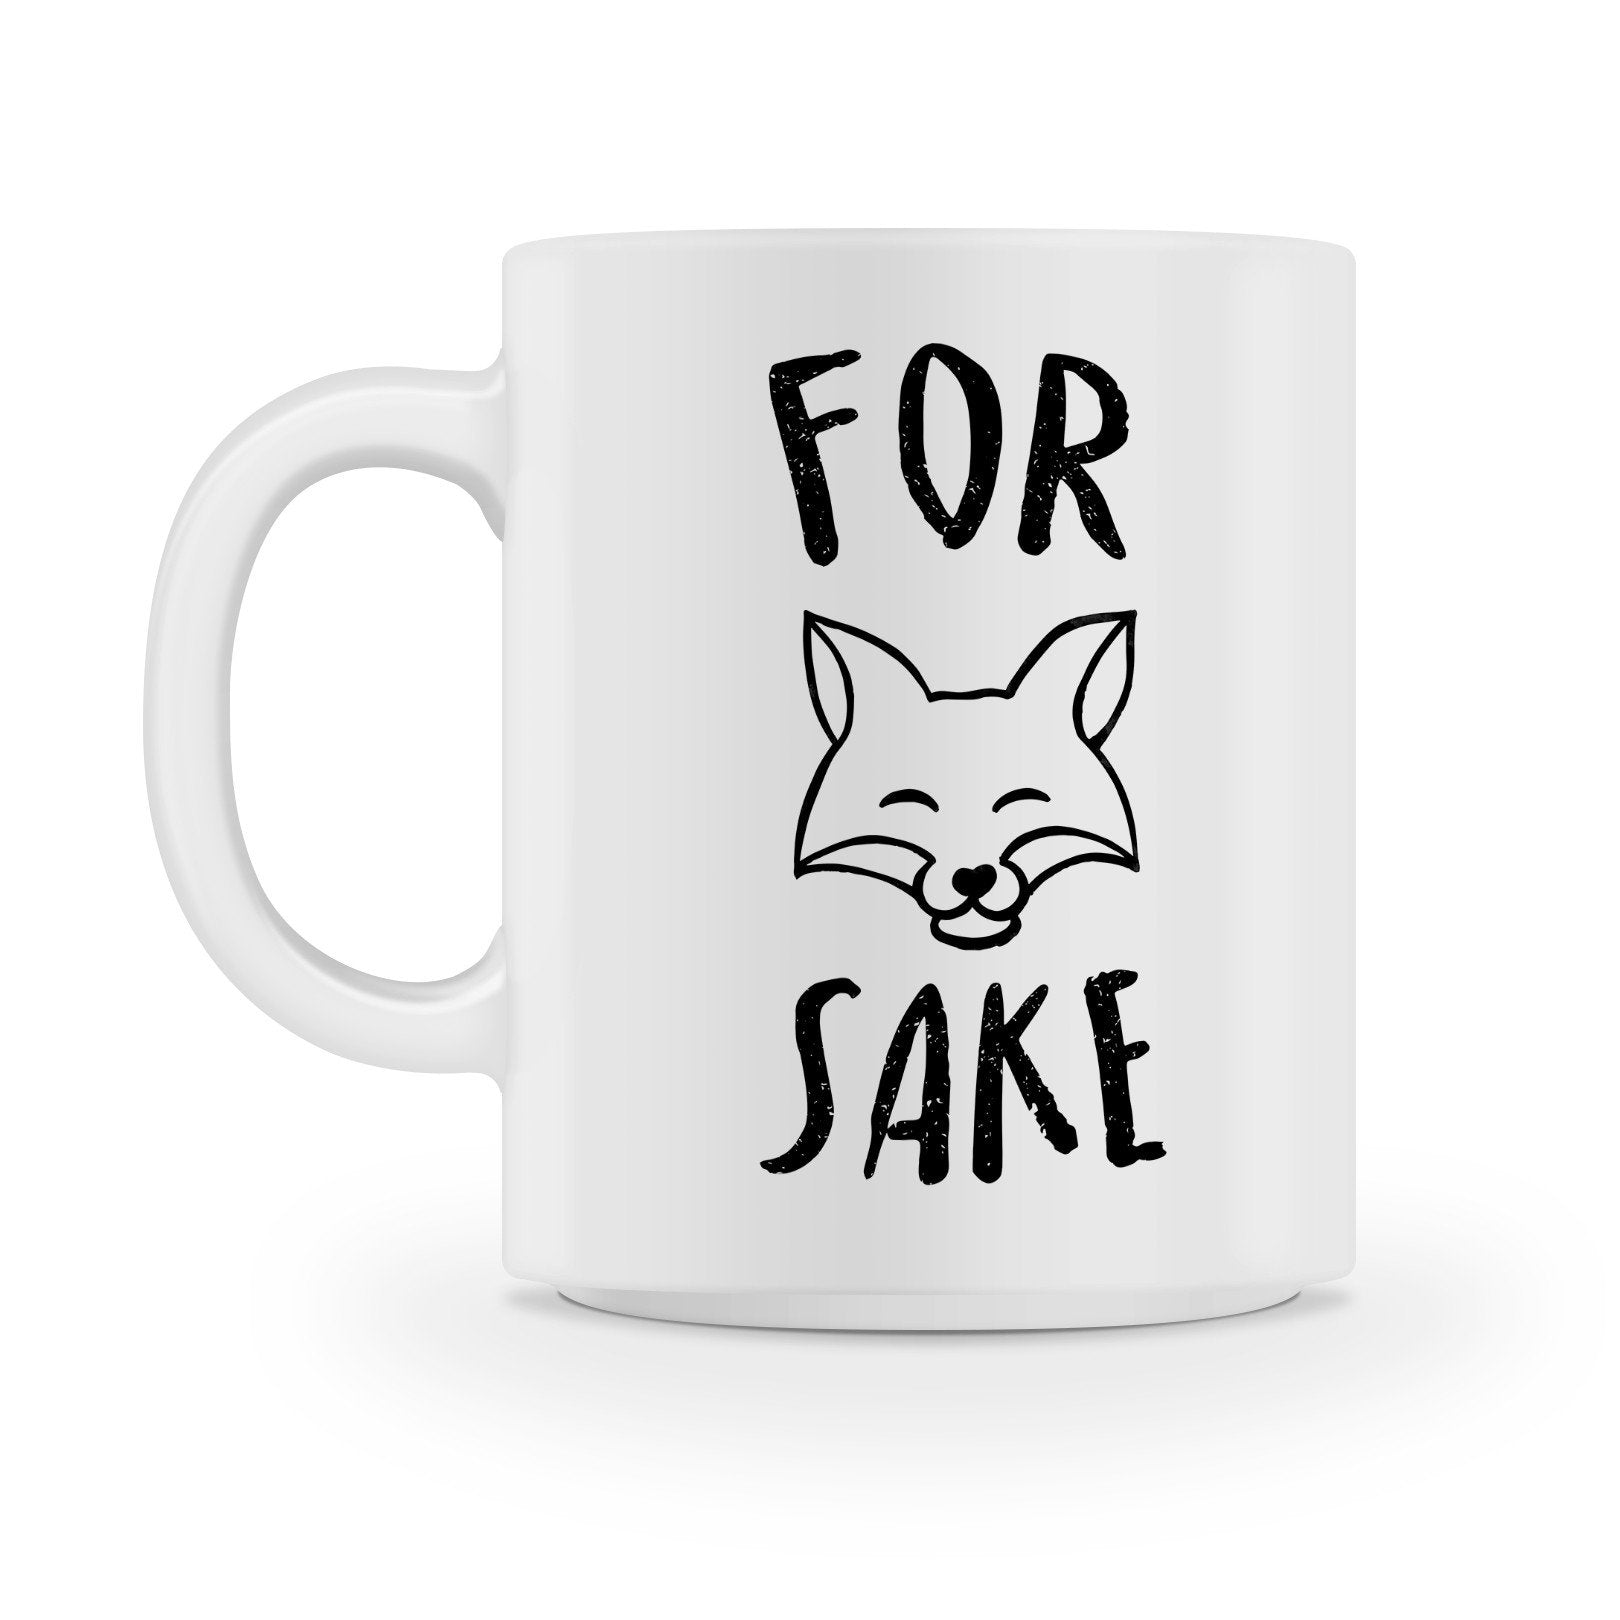 For Fox Sake Coffee Mug - Shirtoopia